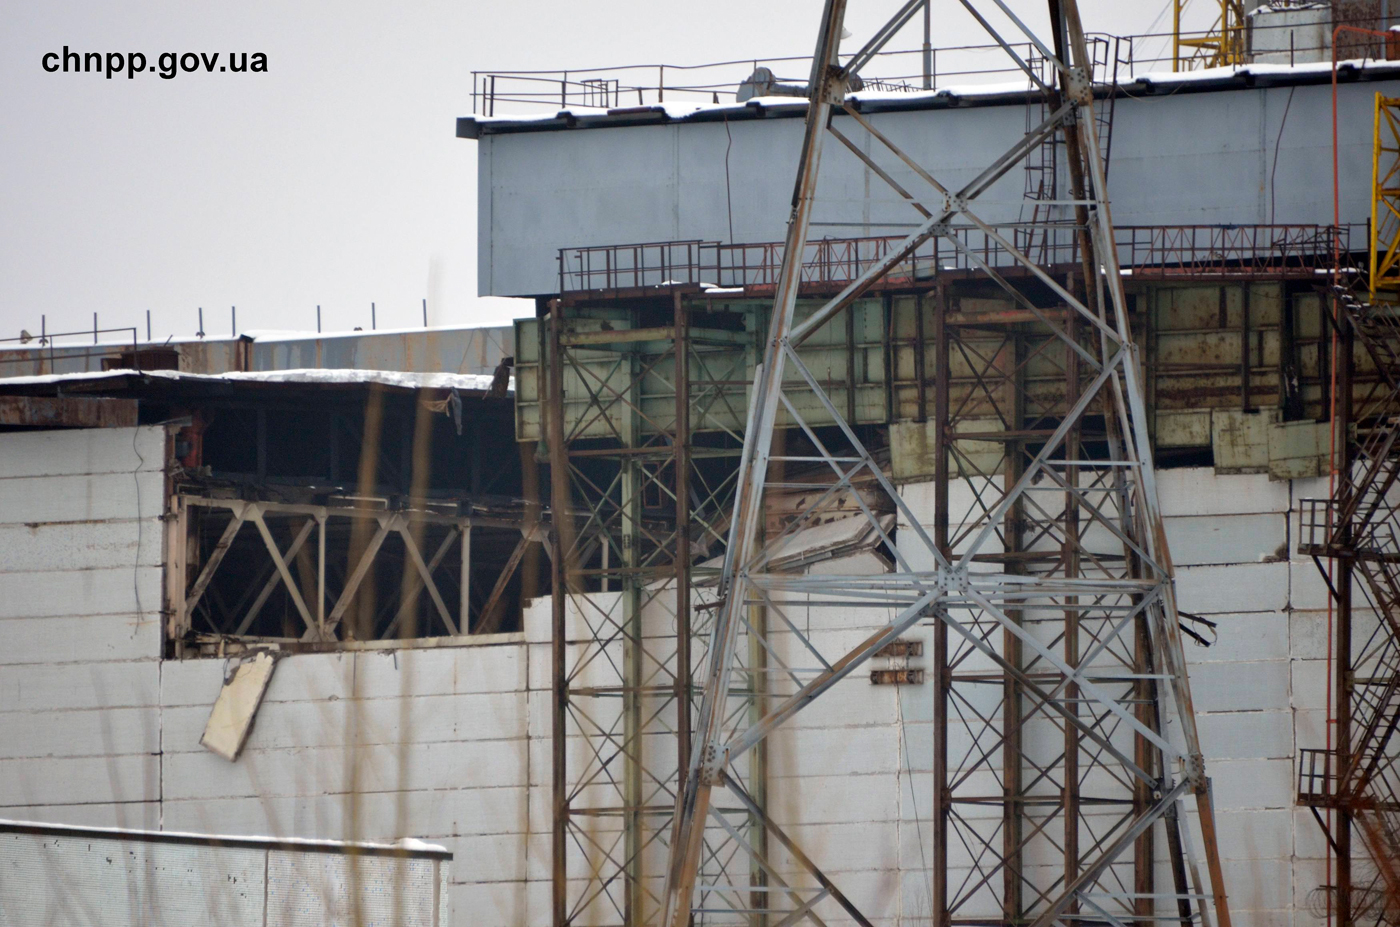 Se derrumba techo en planta nuclear de Chernobyl (Foto)